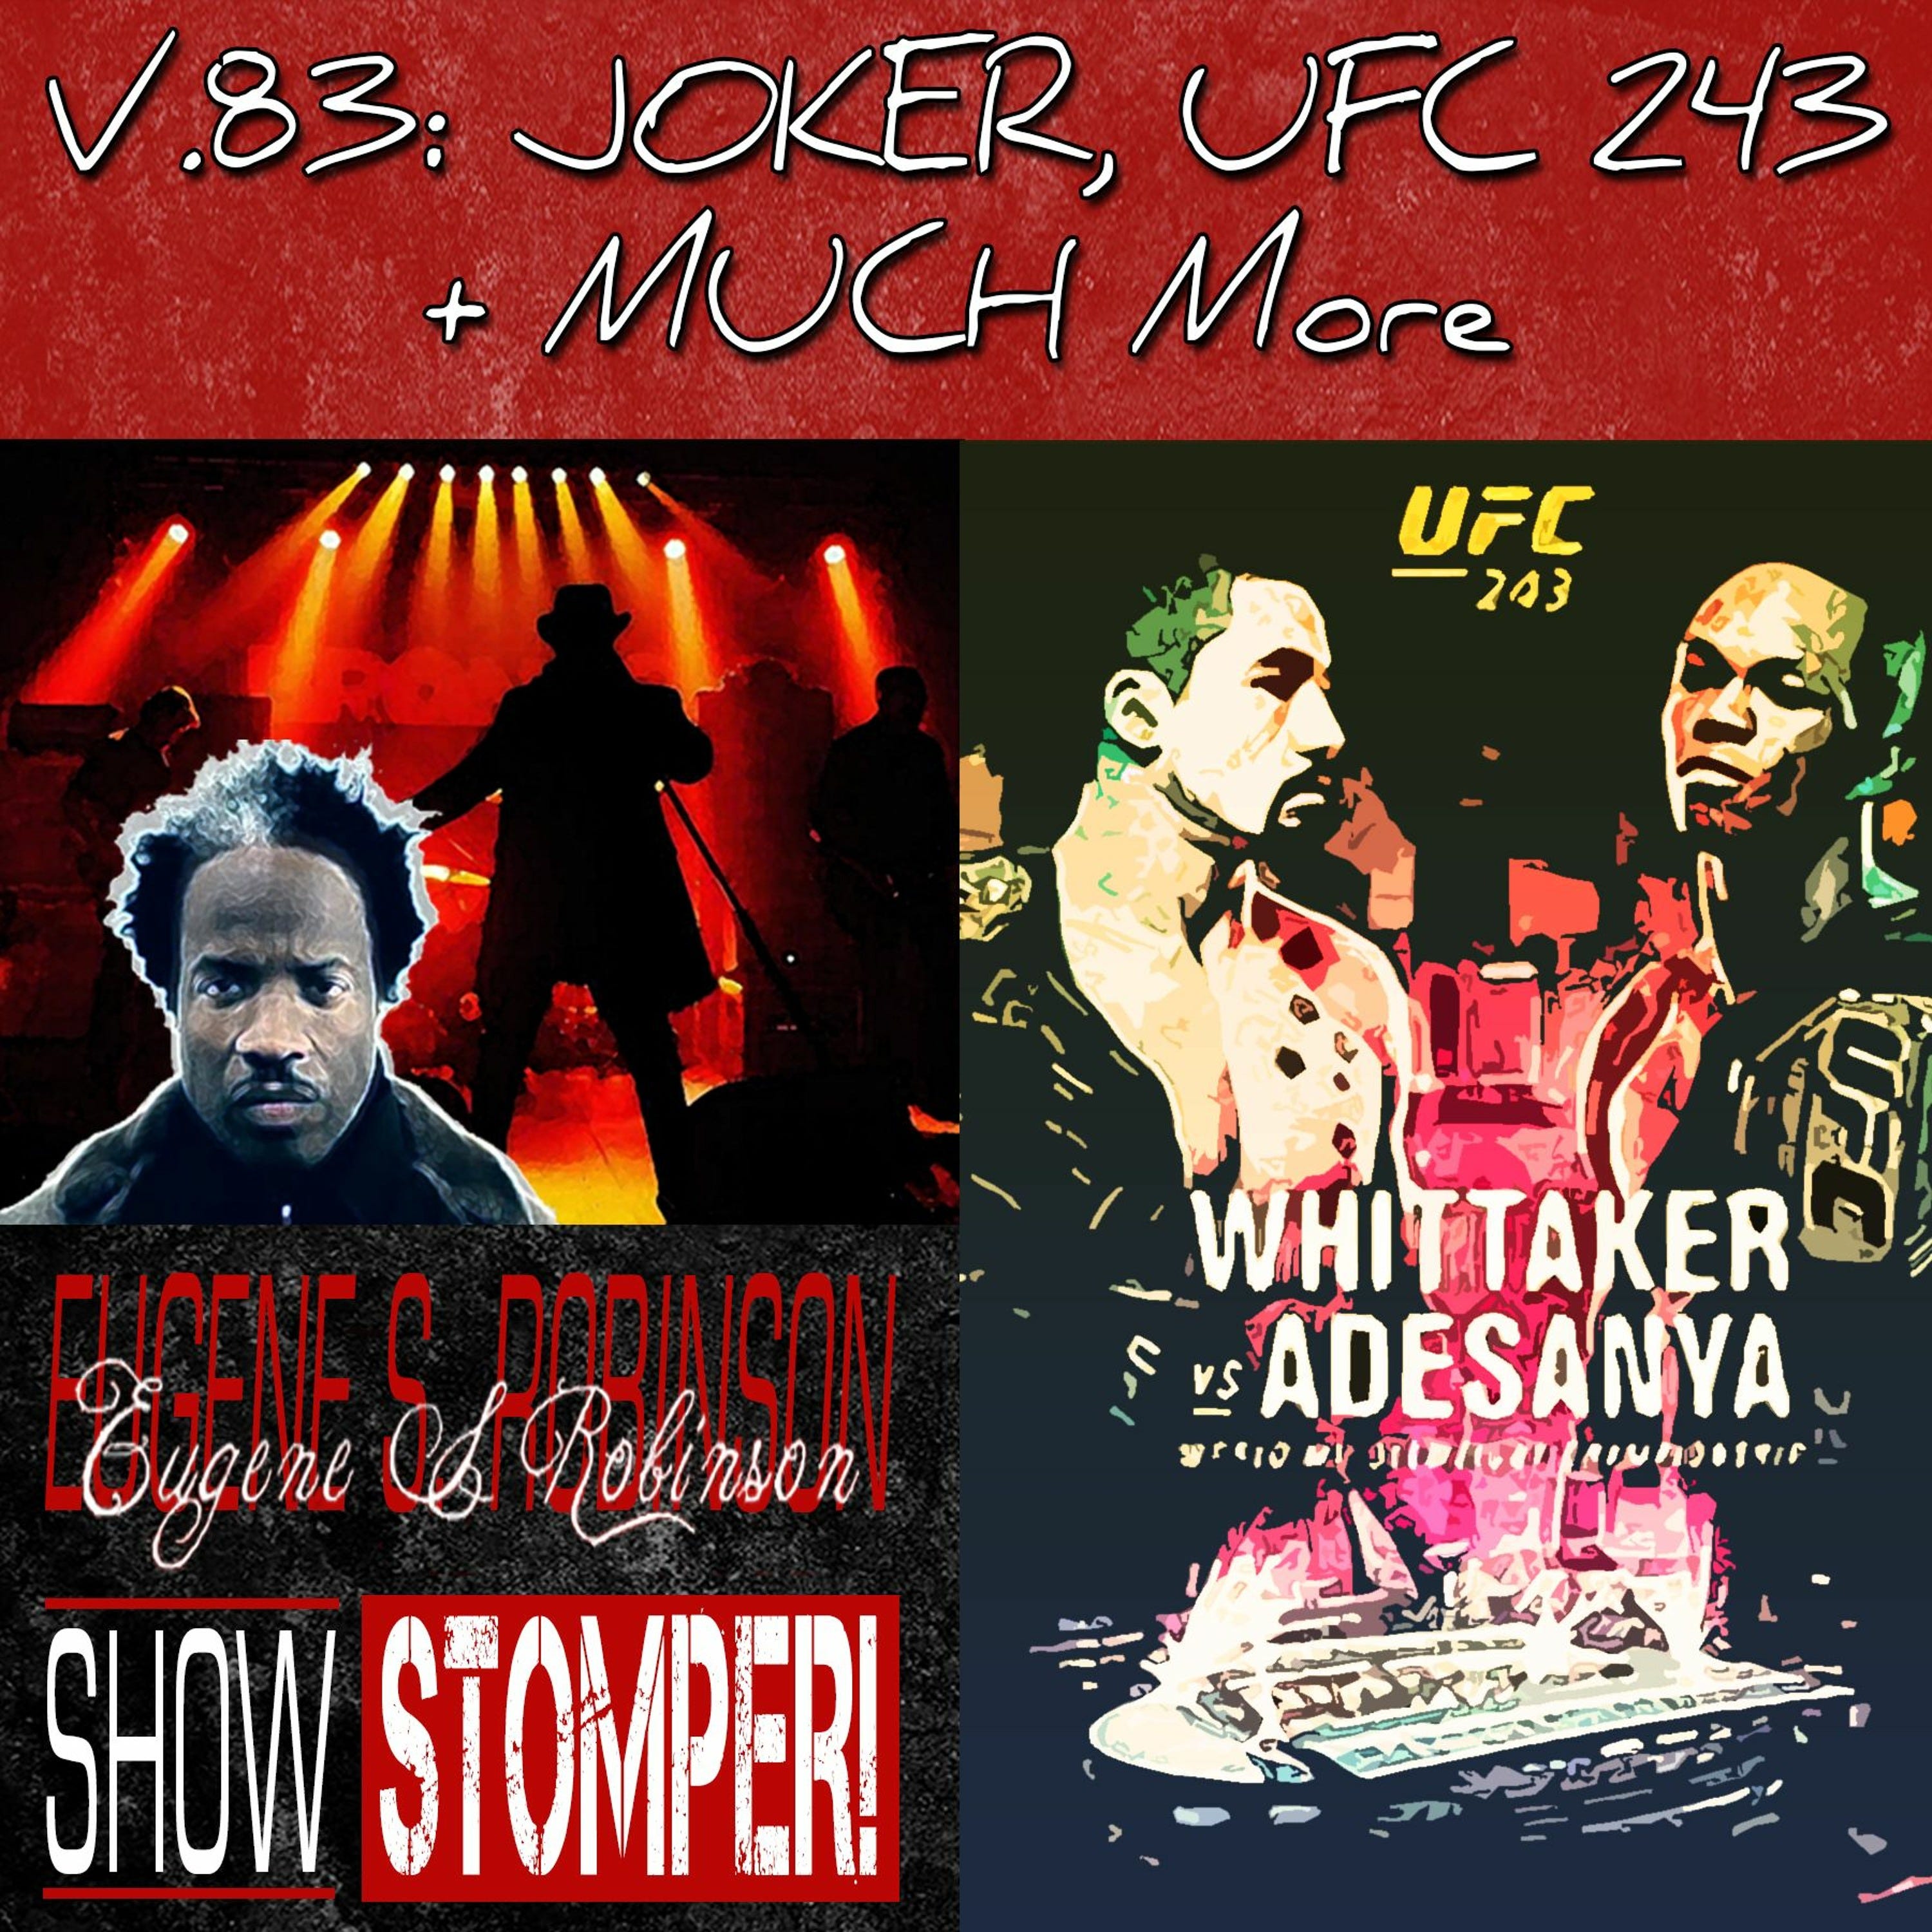 V.83 JOKER, UFC 243 + MUCH More On The Eugene S. Robinson Show Stomper!